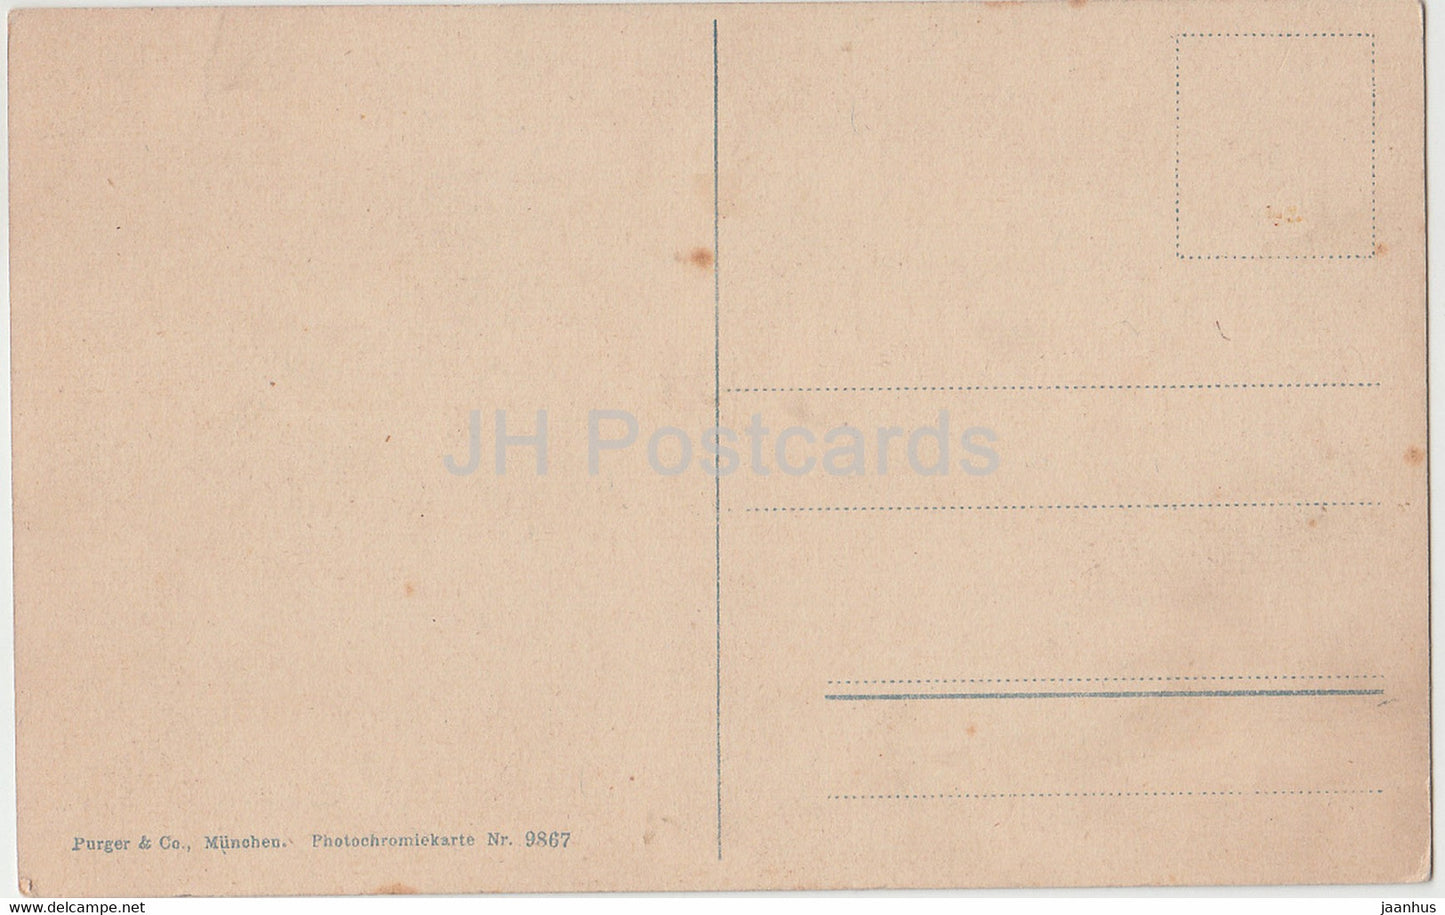 Bad Reichenhall mit Hochstaufen 1771 m - 9867 - old postcard - Germany - unused